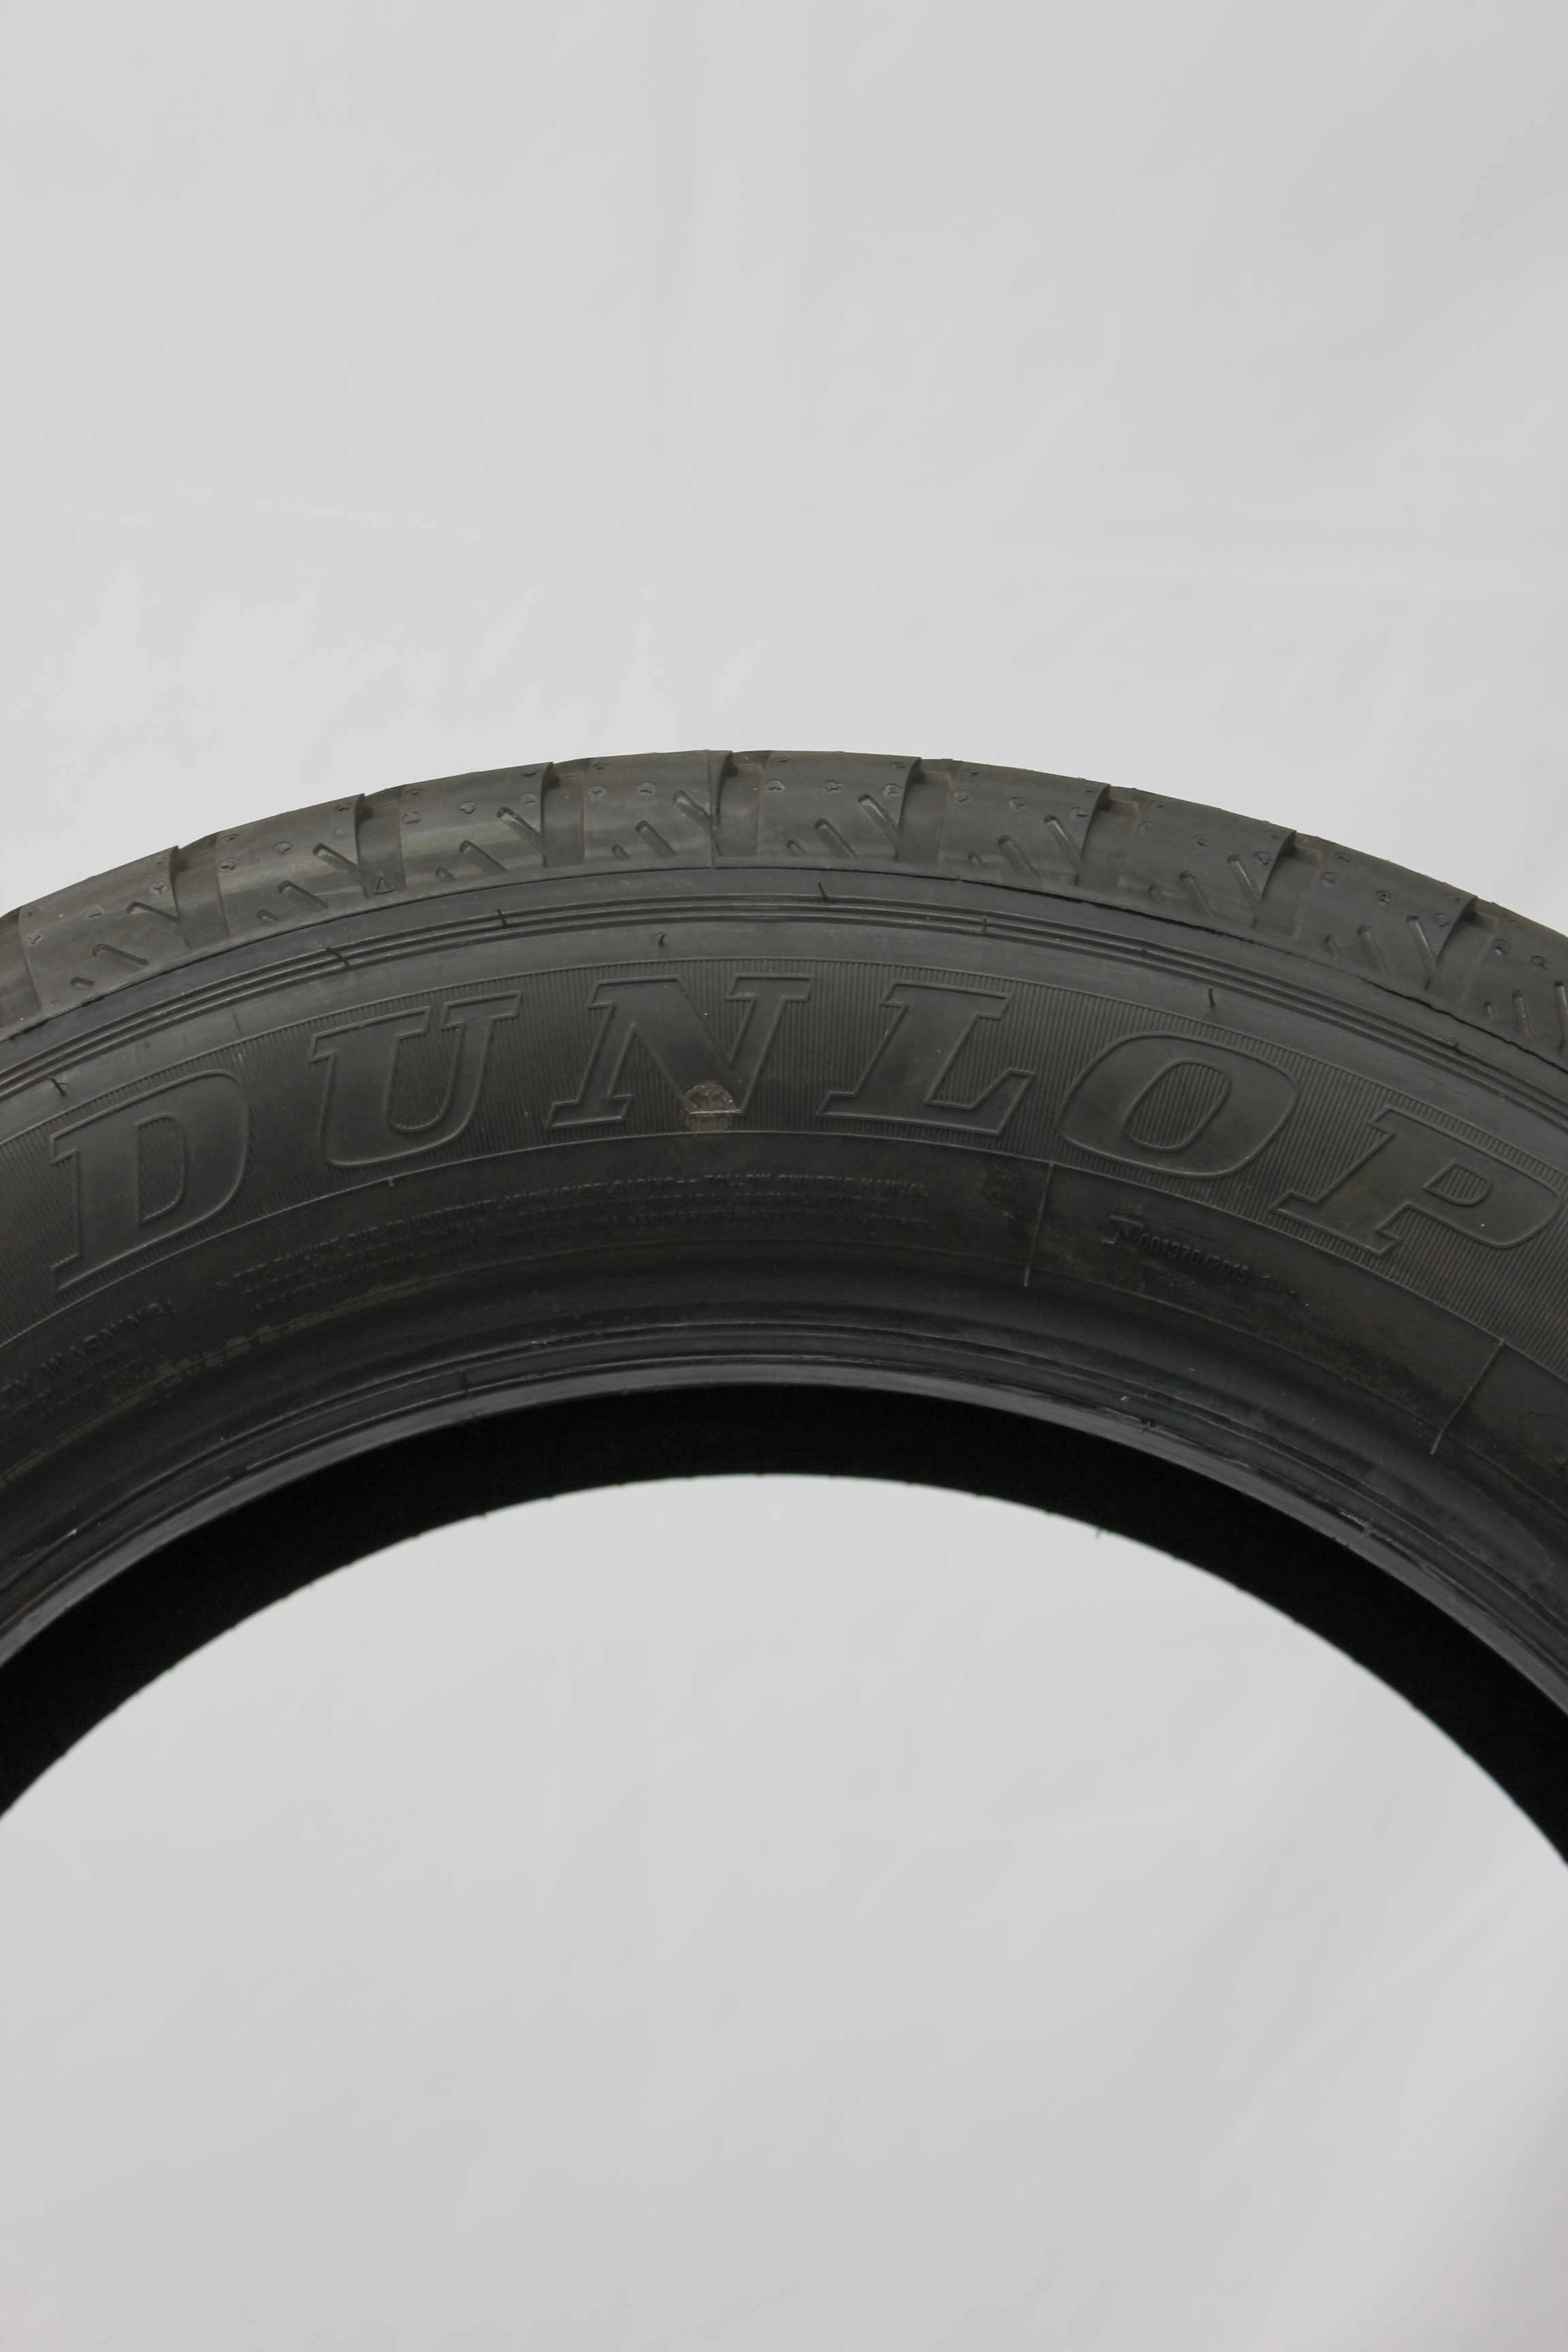 Sommerreifen-Dunlop-Econodrive-225-55-R17-109-107H-1_(7)